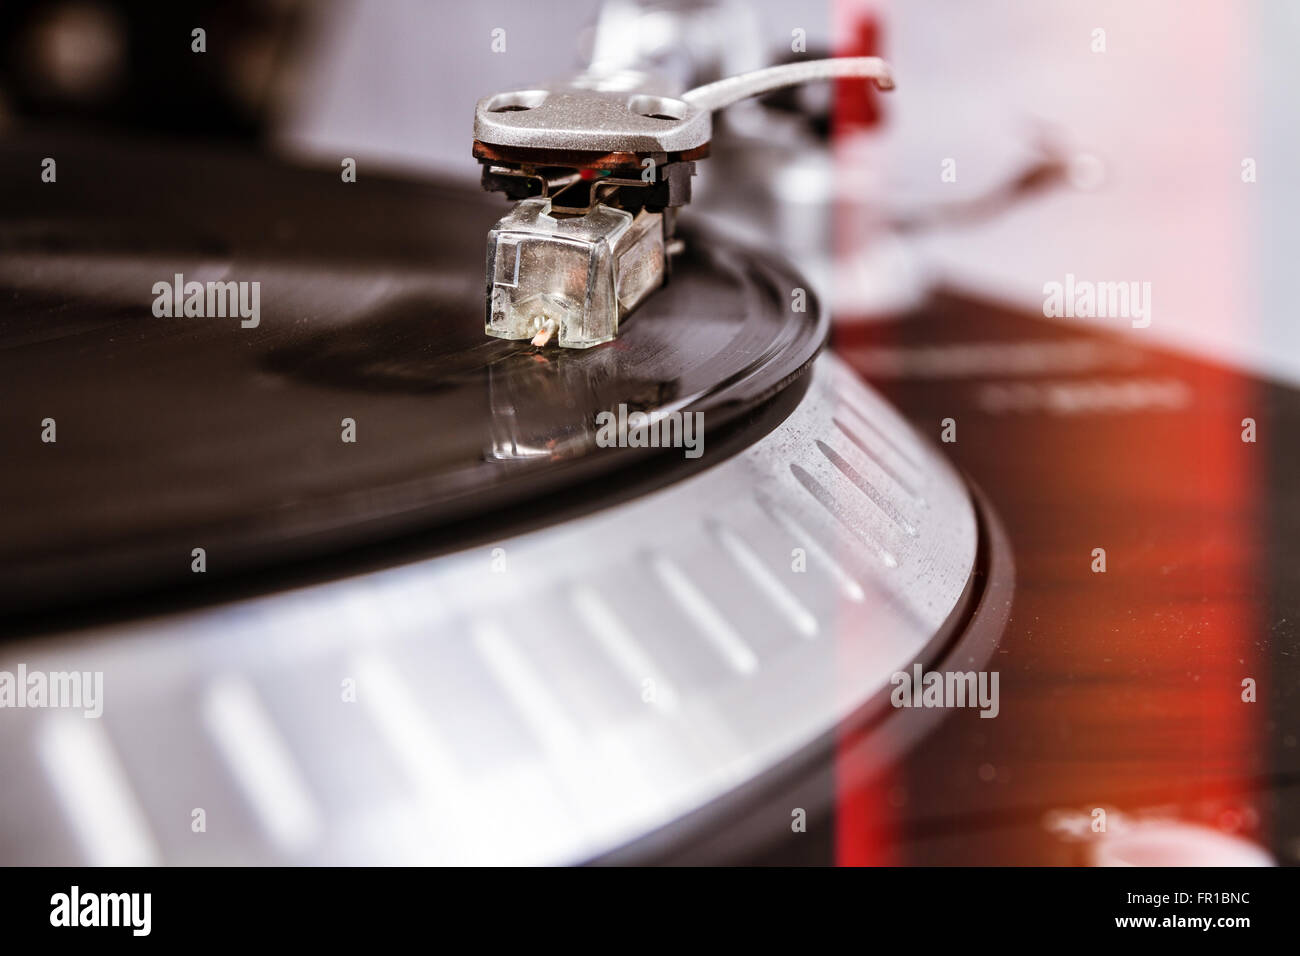 Professioneller Plattenspieler Vinyl-Schallplatten mit Musik zu spielen. Nahaufnahme auf Details: Nadel, Tonarm, Platte, Vinyl-Schallplatte Stockfoto